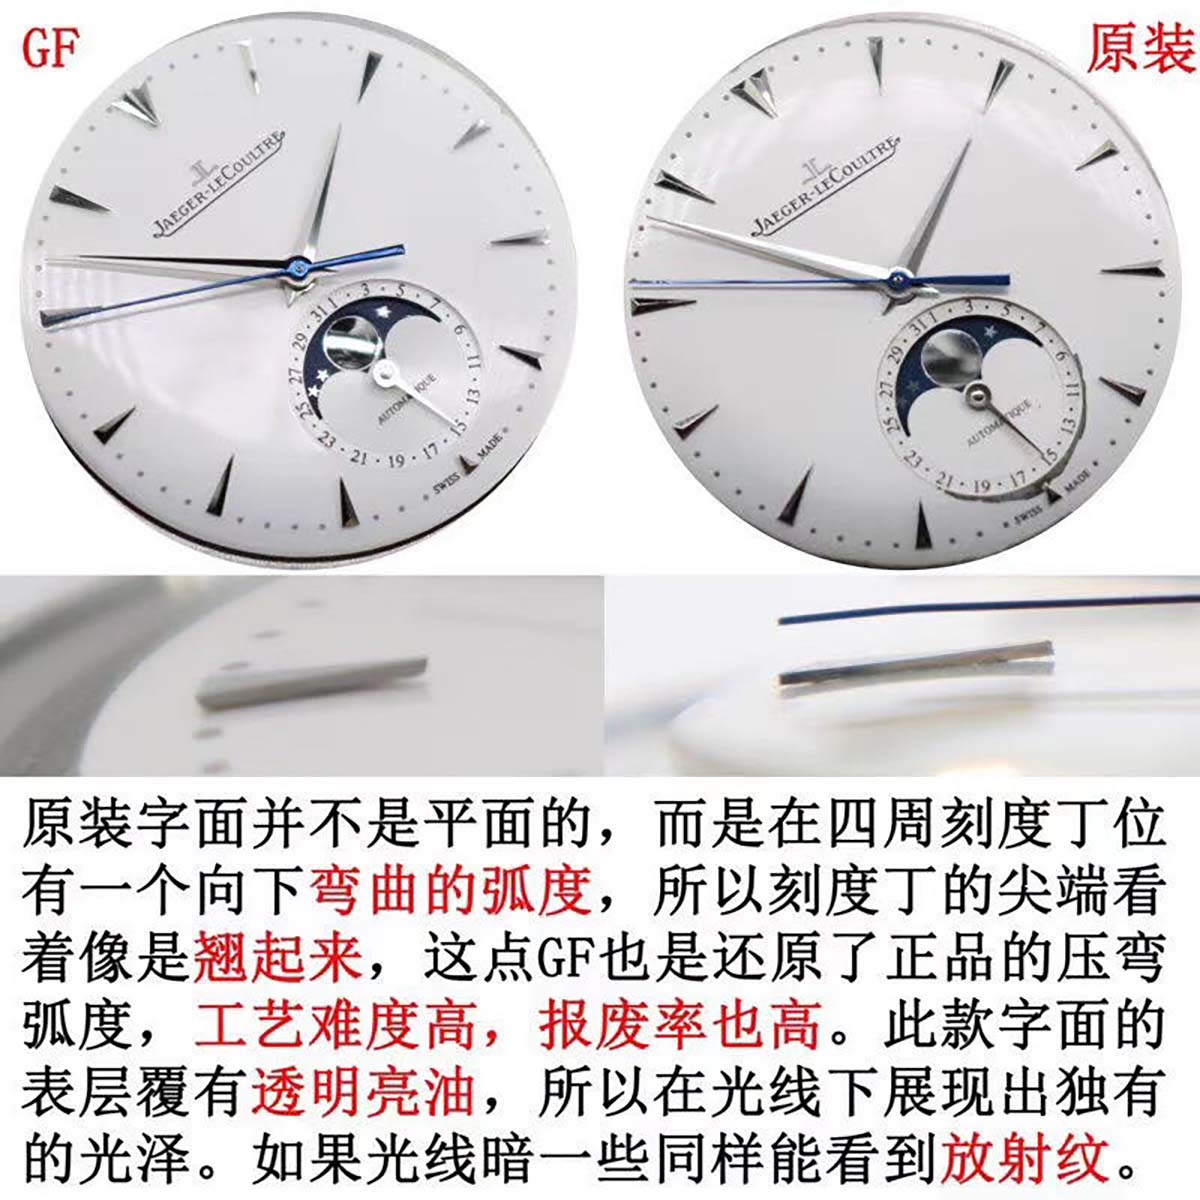 GF厂积家超薄月相大师系列1368420复刻腕表对比正品细节展示-对比图文评测